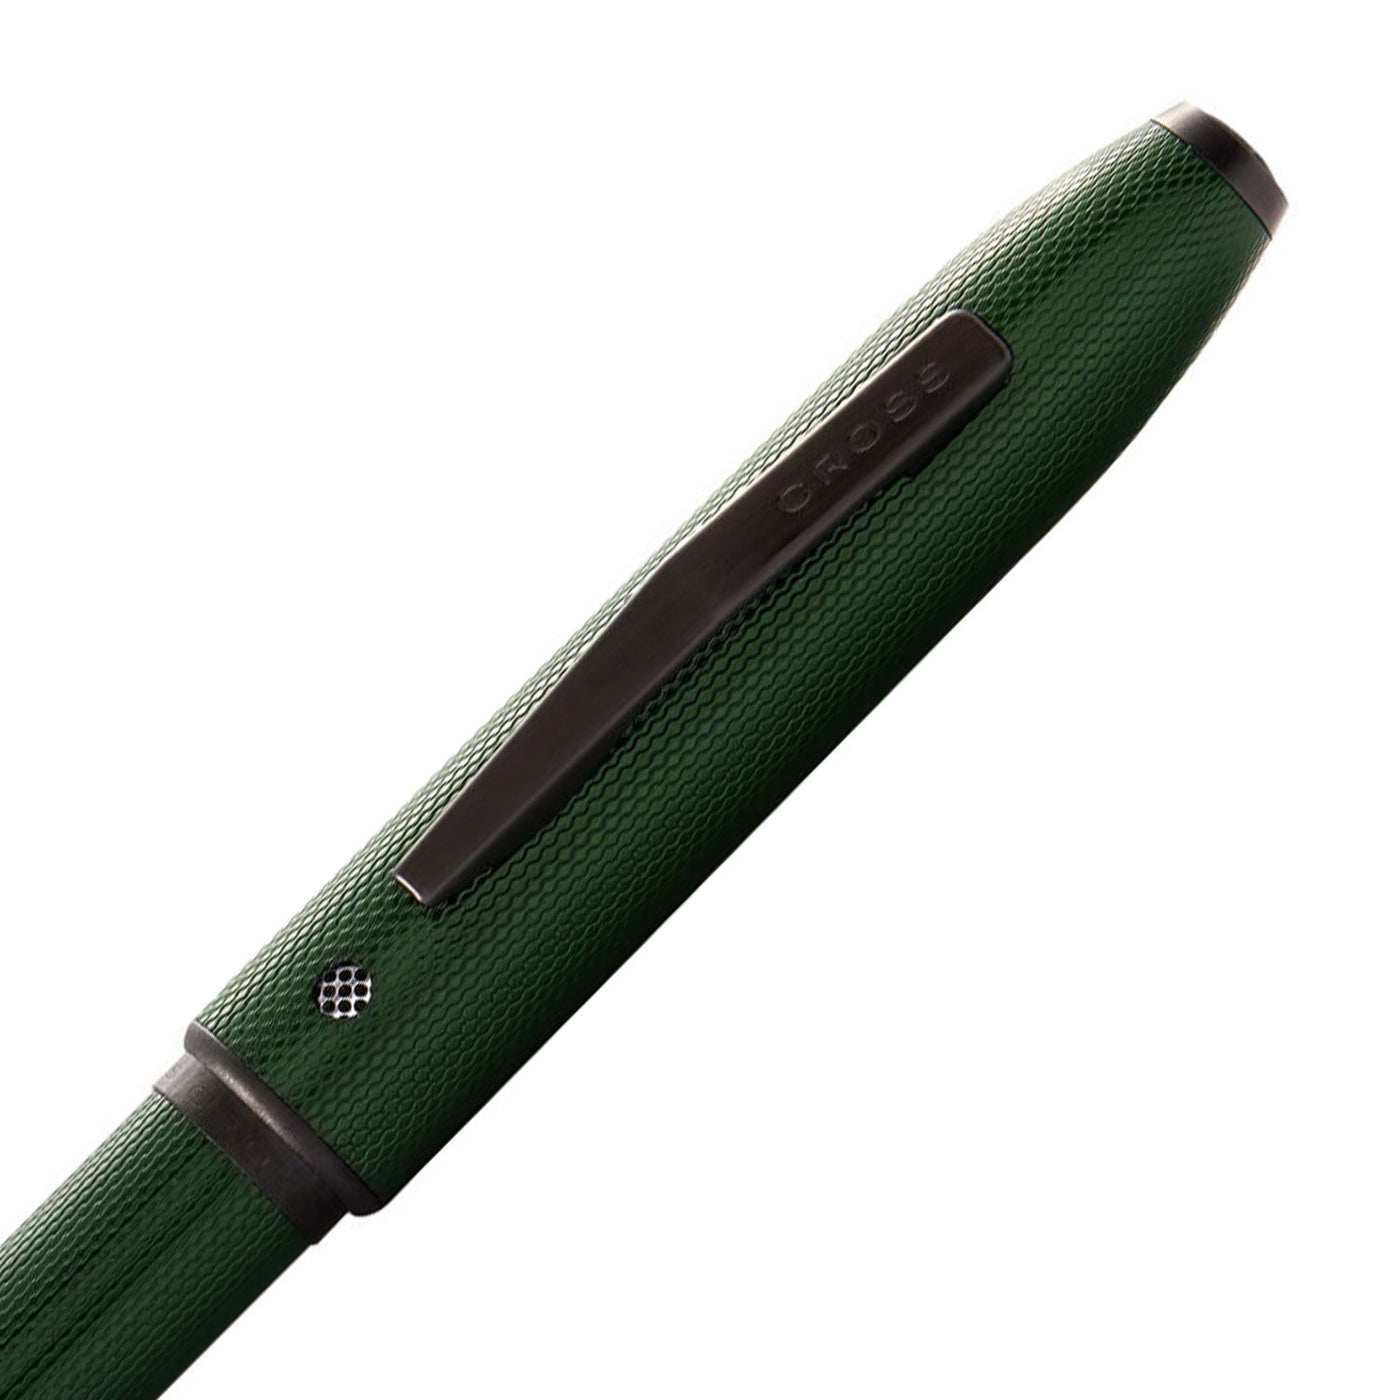 Cross Tech4 Multifunction Ball Pen - Textured Green PVD 3